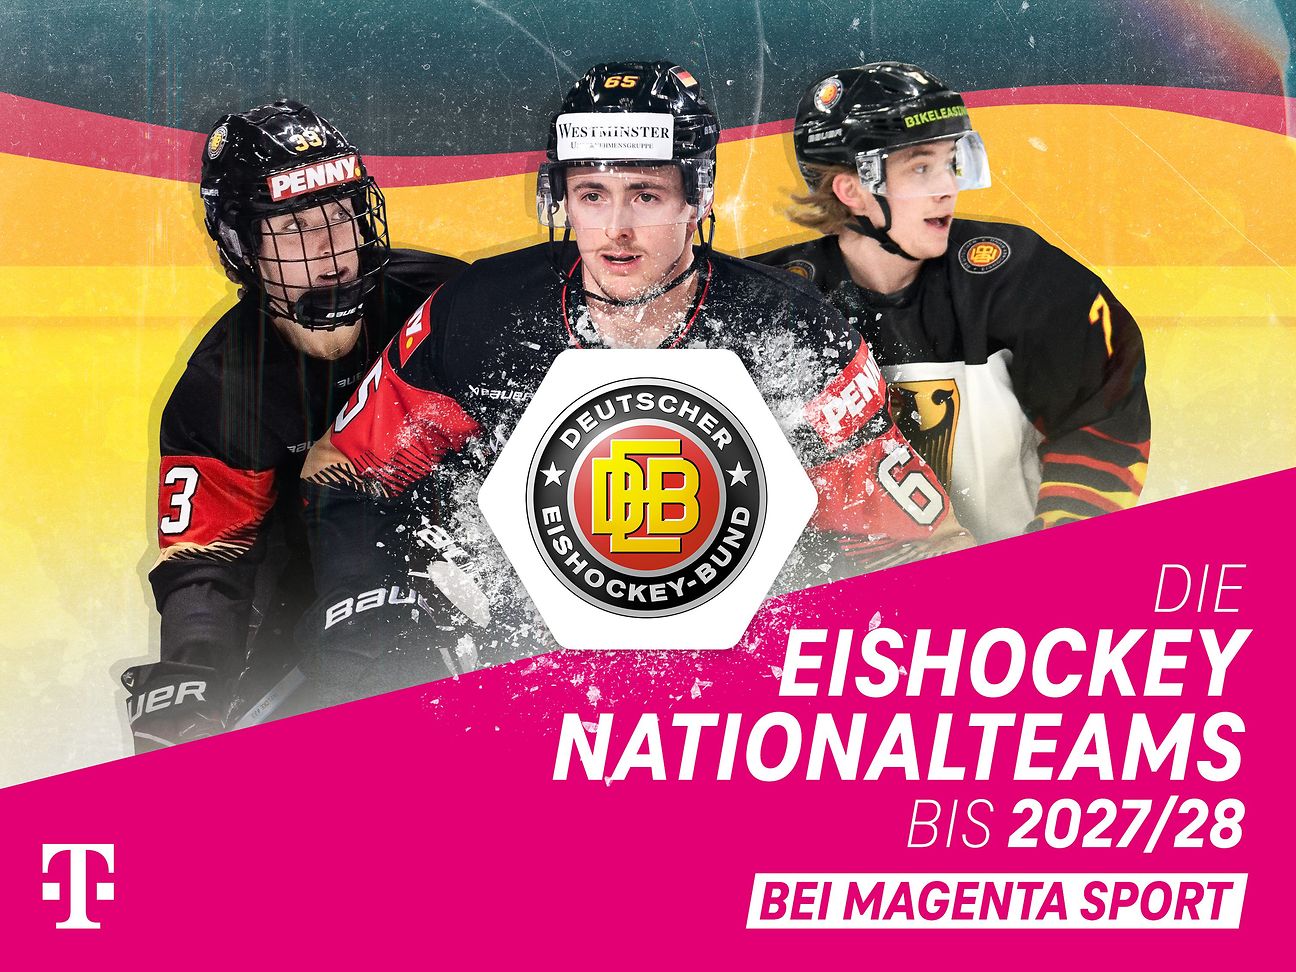 MagentaSport erweitert Eishockey-Angebot DEB-Vertrag vorzeitig bis 2028 verlängert Deutsche Telekom